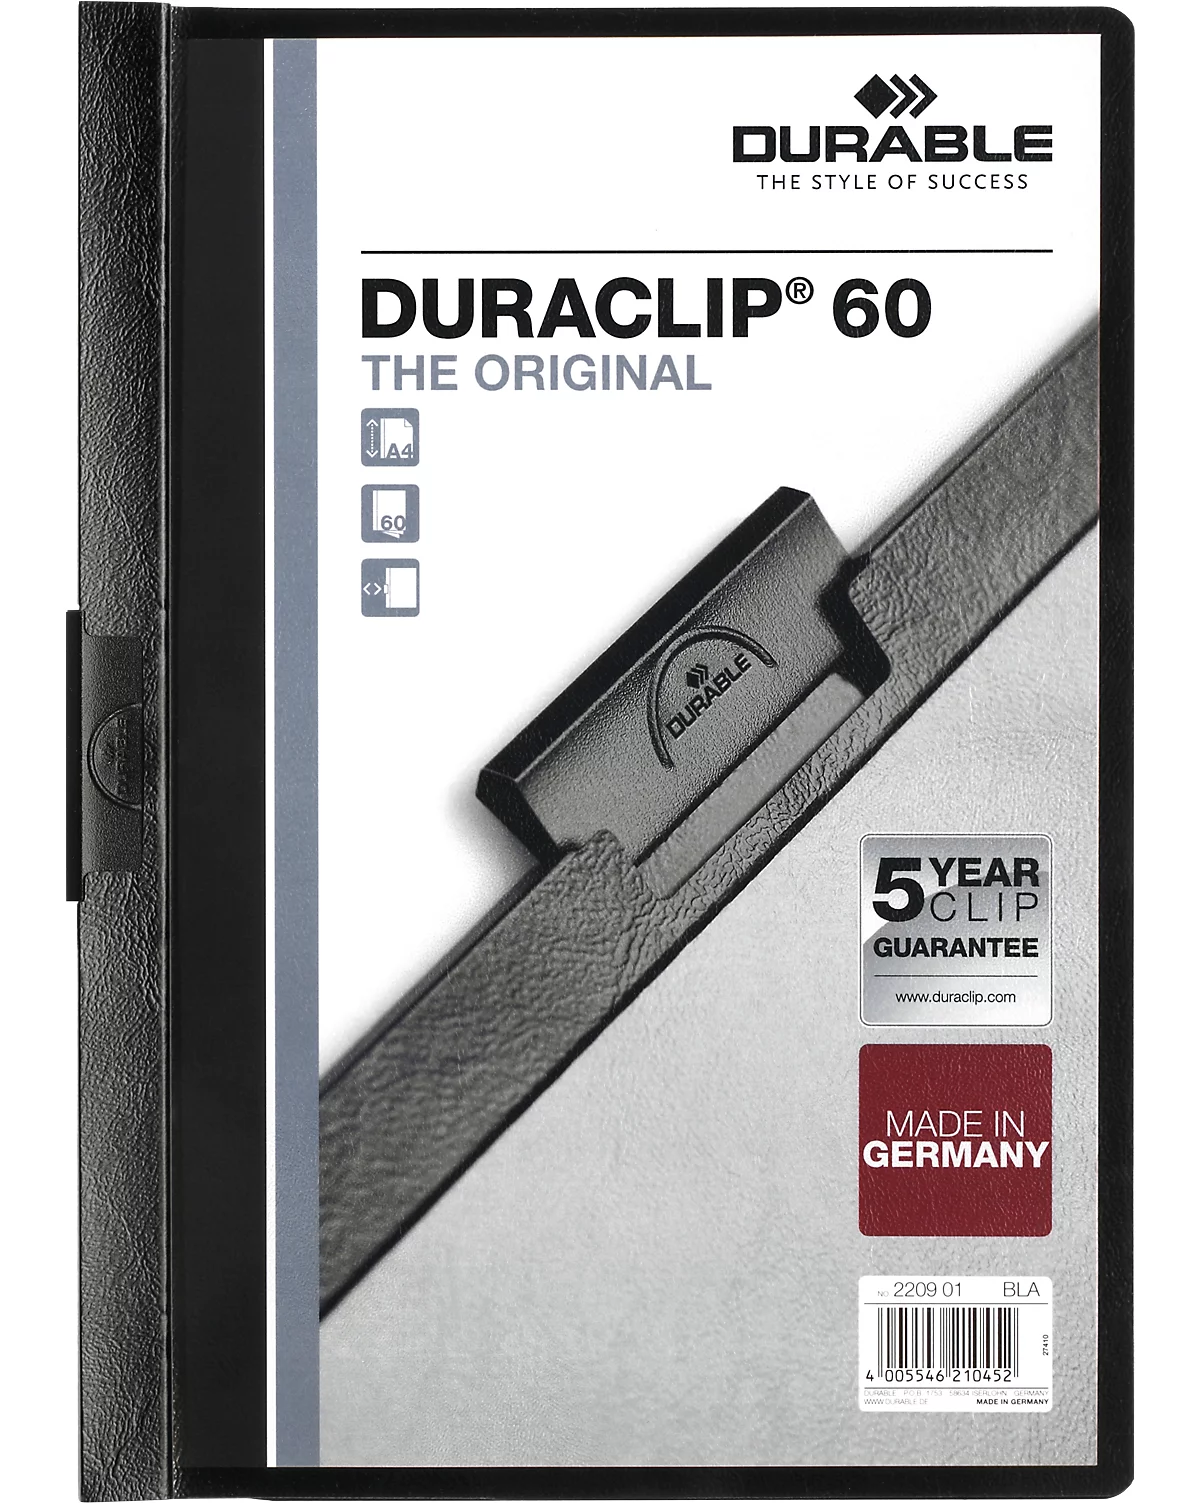 Durable Klemmmappen Duraclip, DIN A4, Kunststoff, mit Clip, schwarz